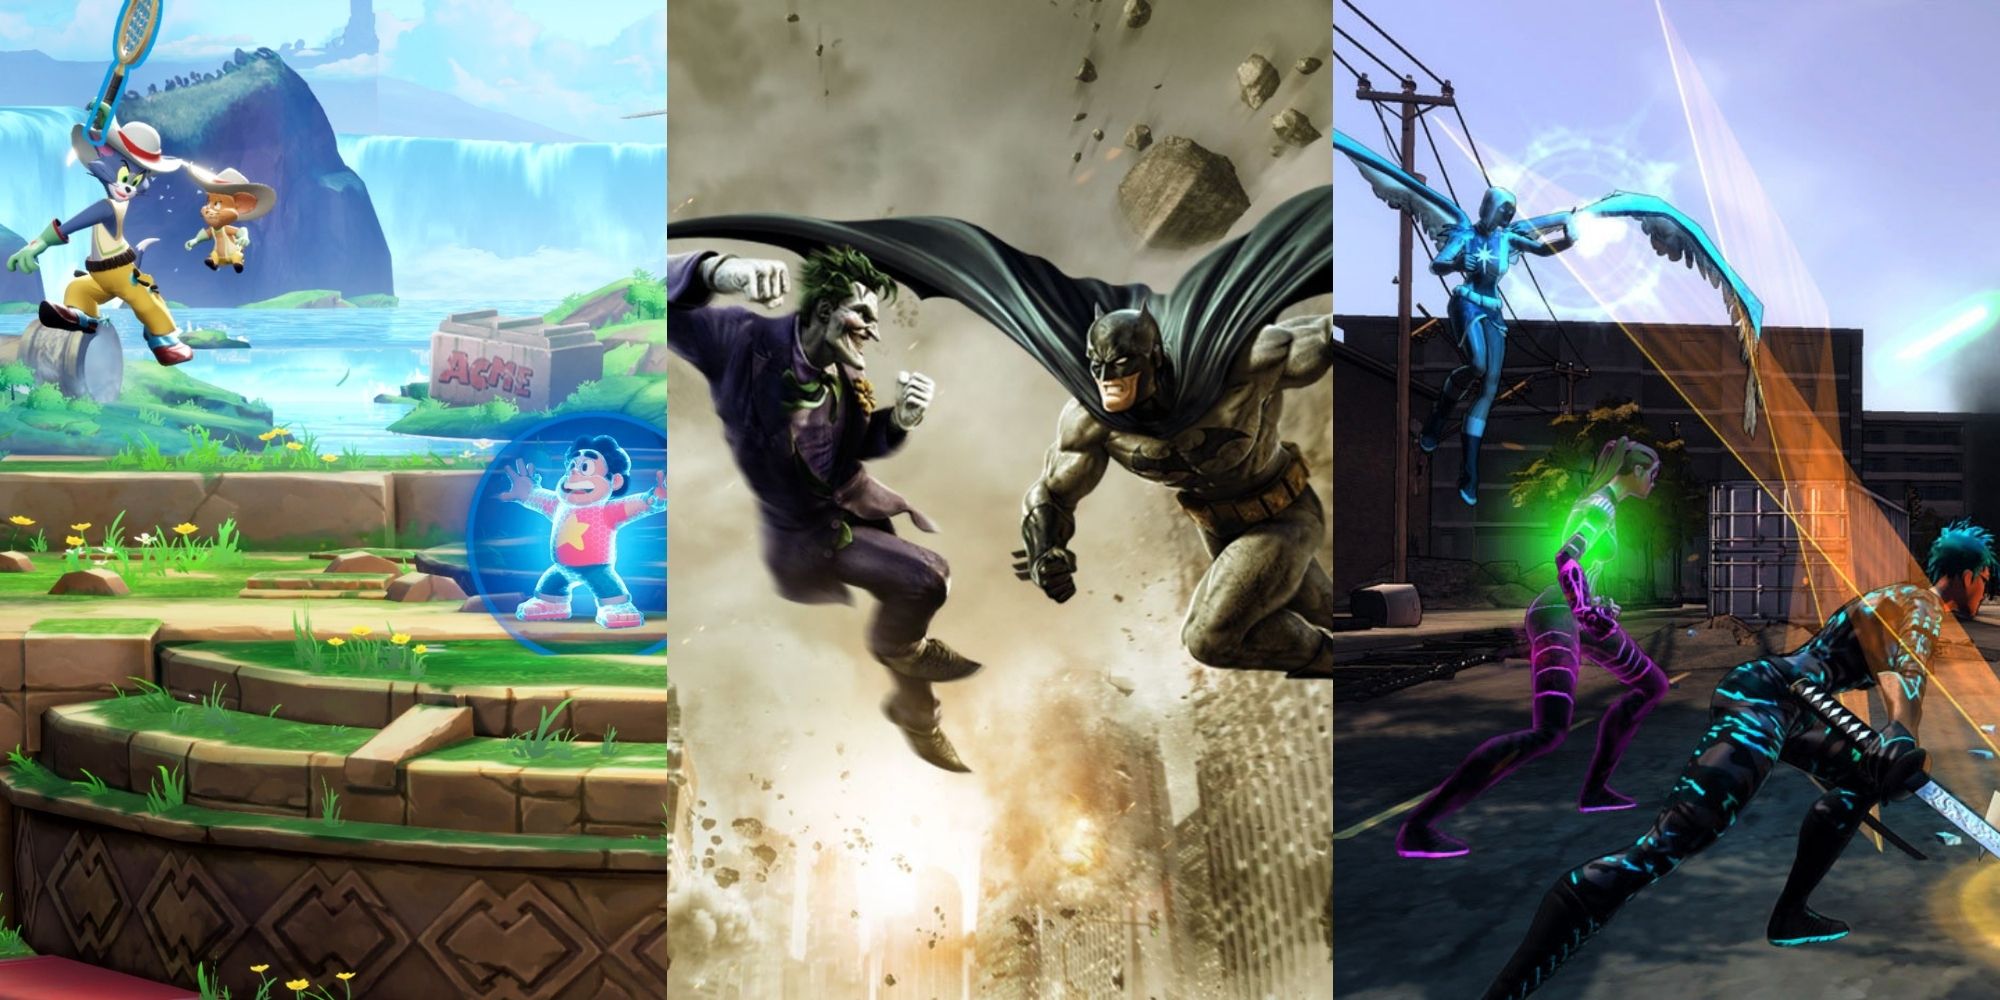 battle in MultiVersus, Joker and Batman in DC Universe Online, battle in Champions Online